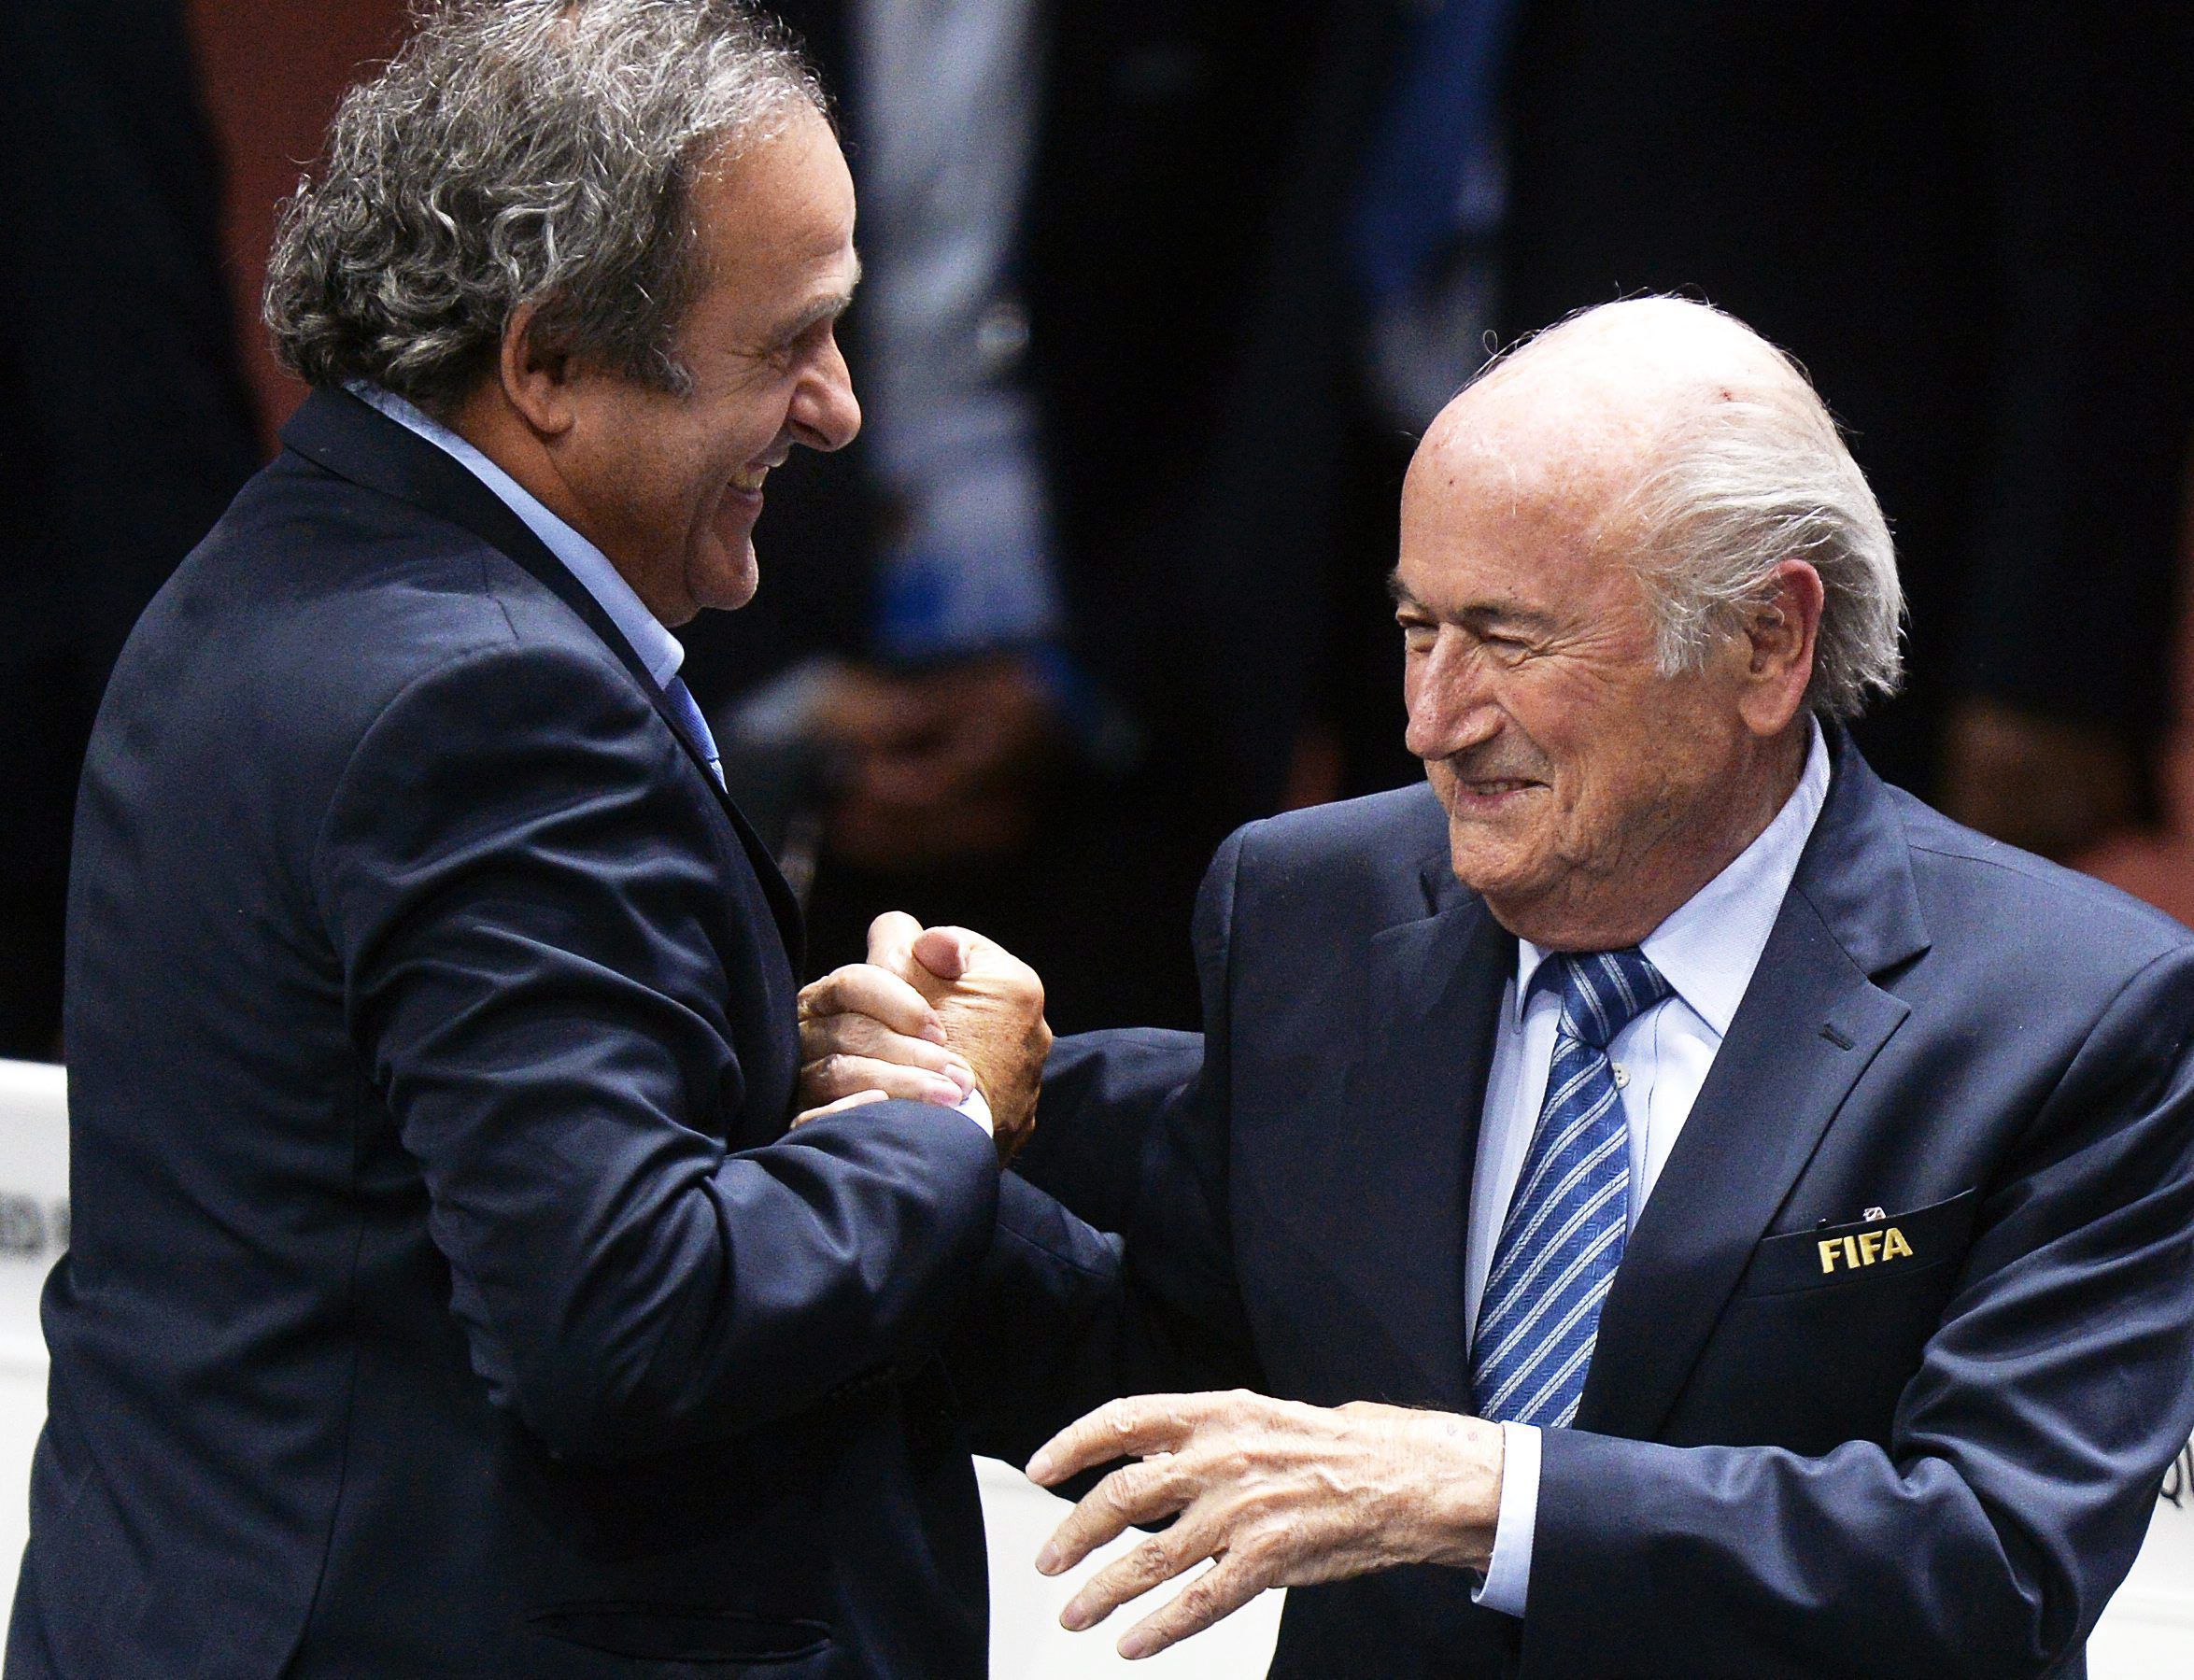 Joseph Blatter, a Nemzetközi Labdarúgó-szövetség, a FIFA egykori elnöke (j) és Michel Platini, az Európai Labdarúgó-szövetség, az UEFA volt elnöke megúszta a törvényi felelősségrevonást / Fotó: MTI/EPA/Walter Bieri